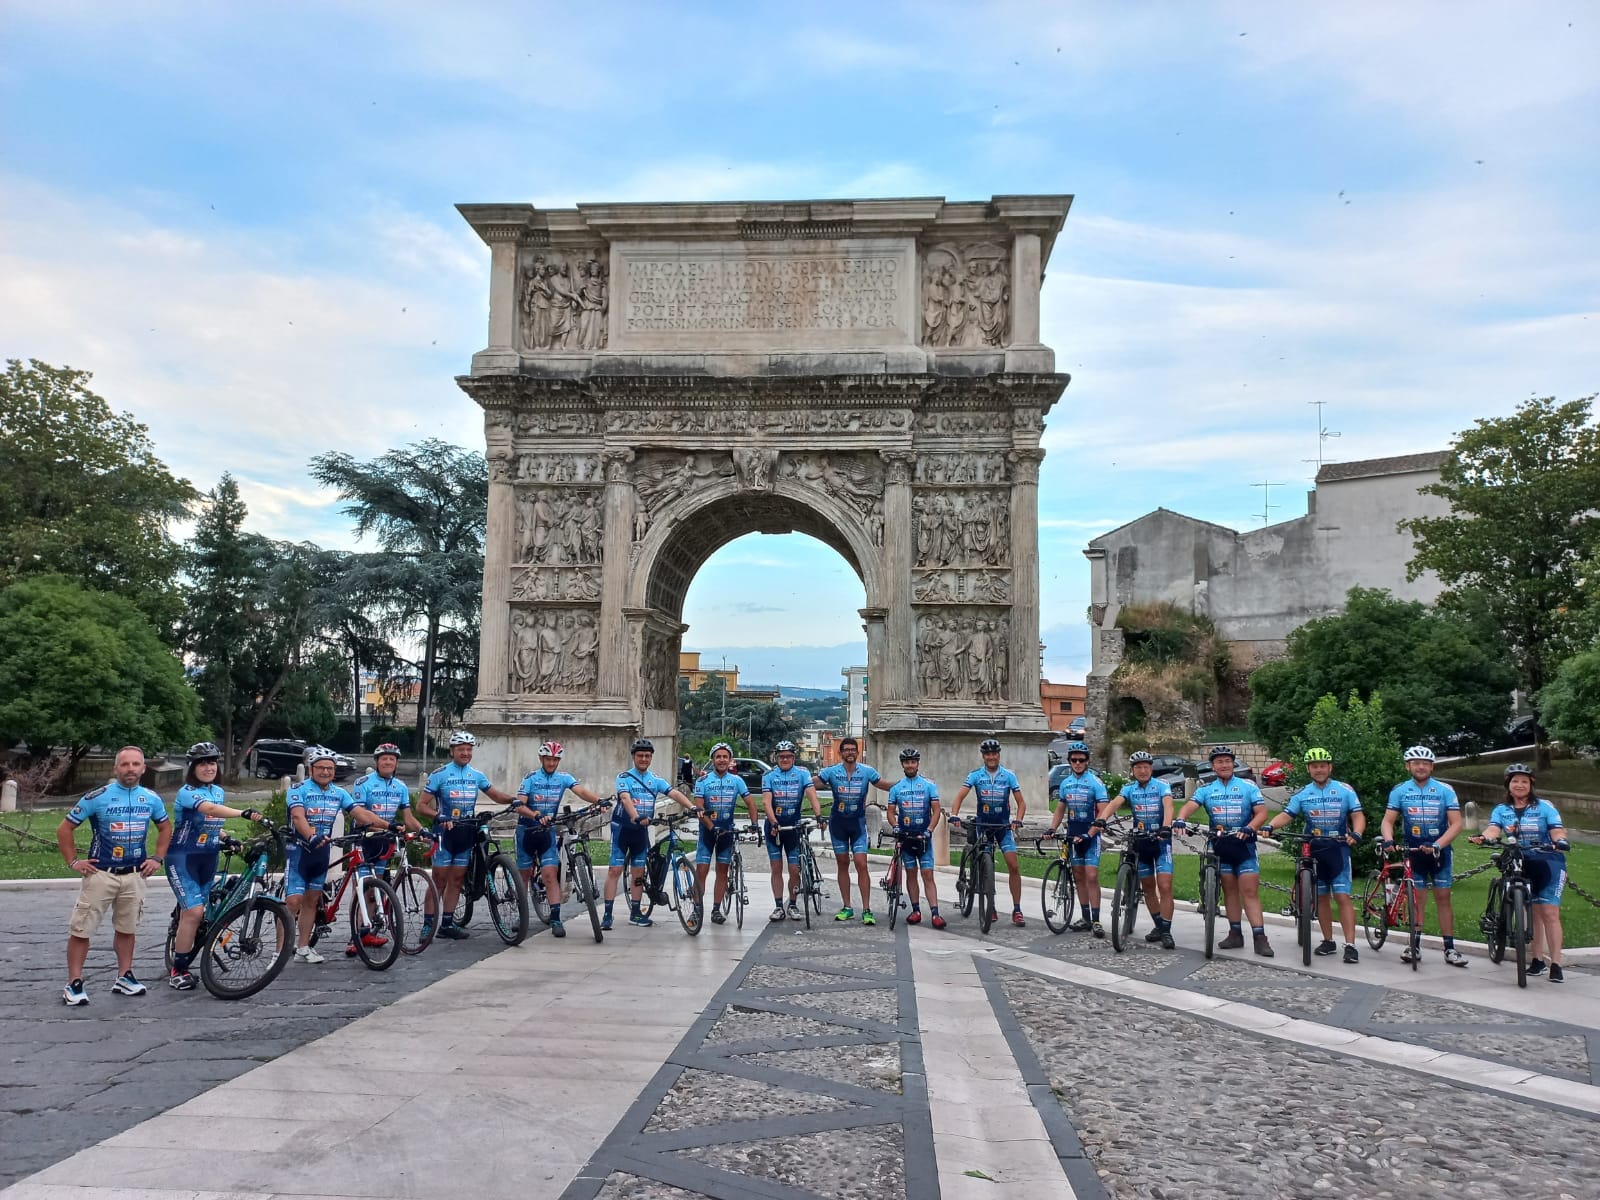 Domani Traiano Velo Club presenta la 9ª tappa della cicloturistica Pedalando sulle Colline Beneventane